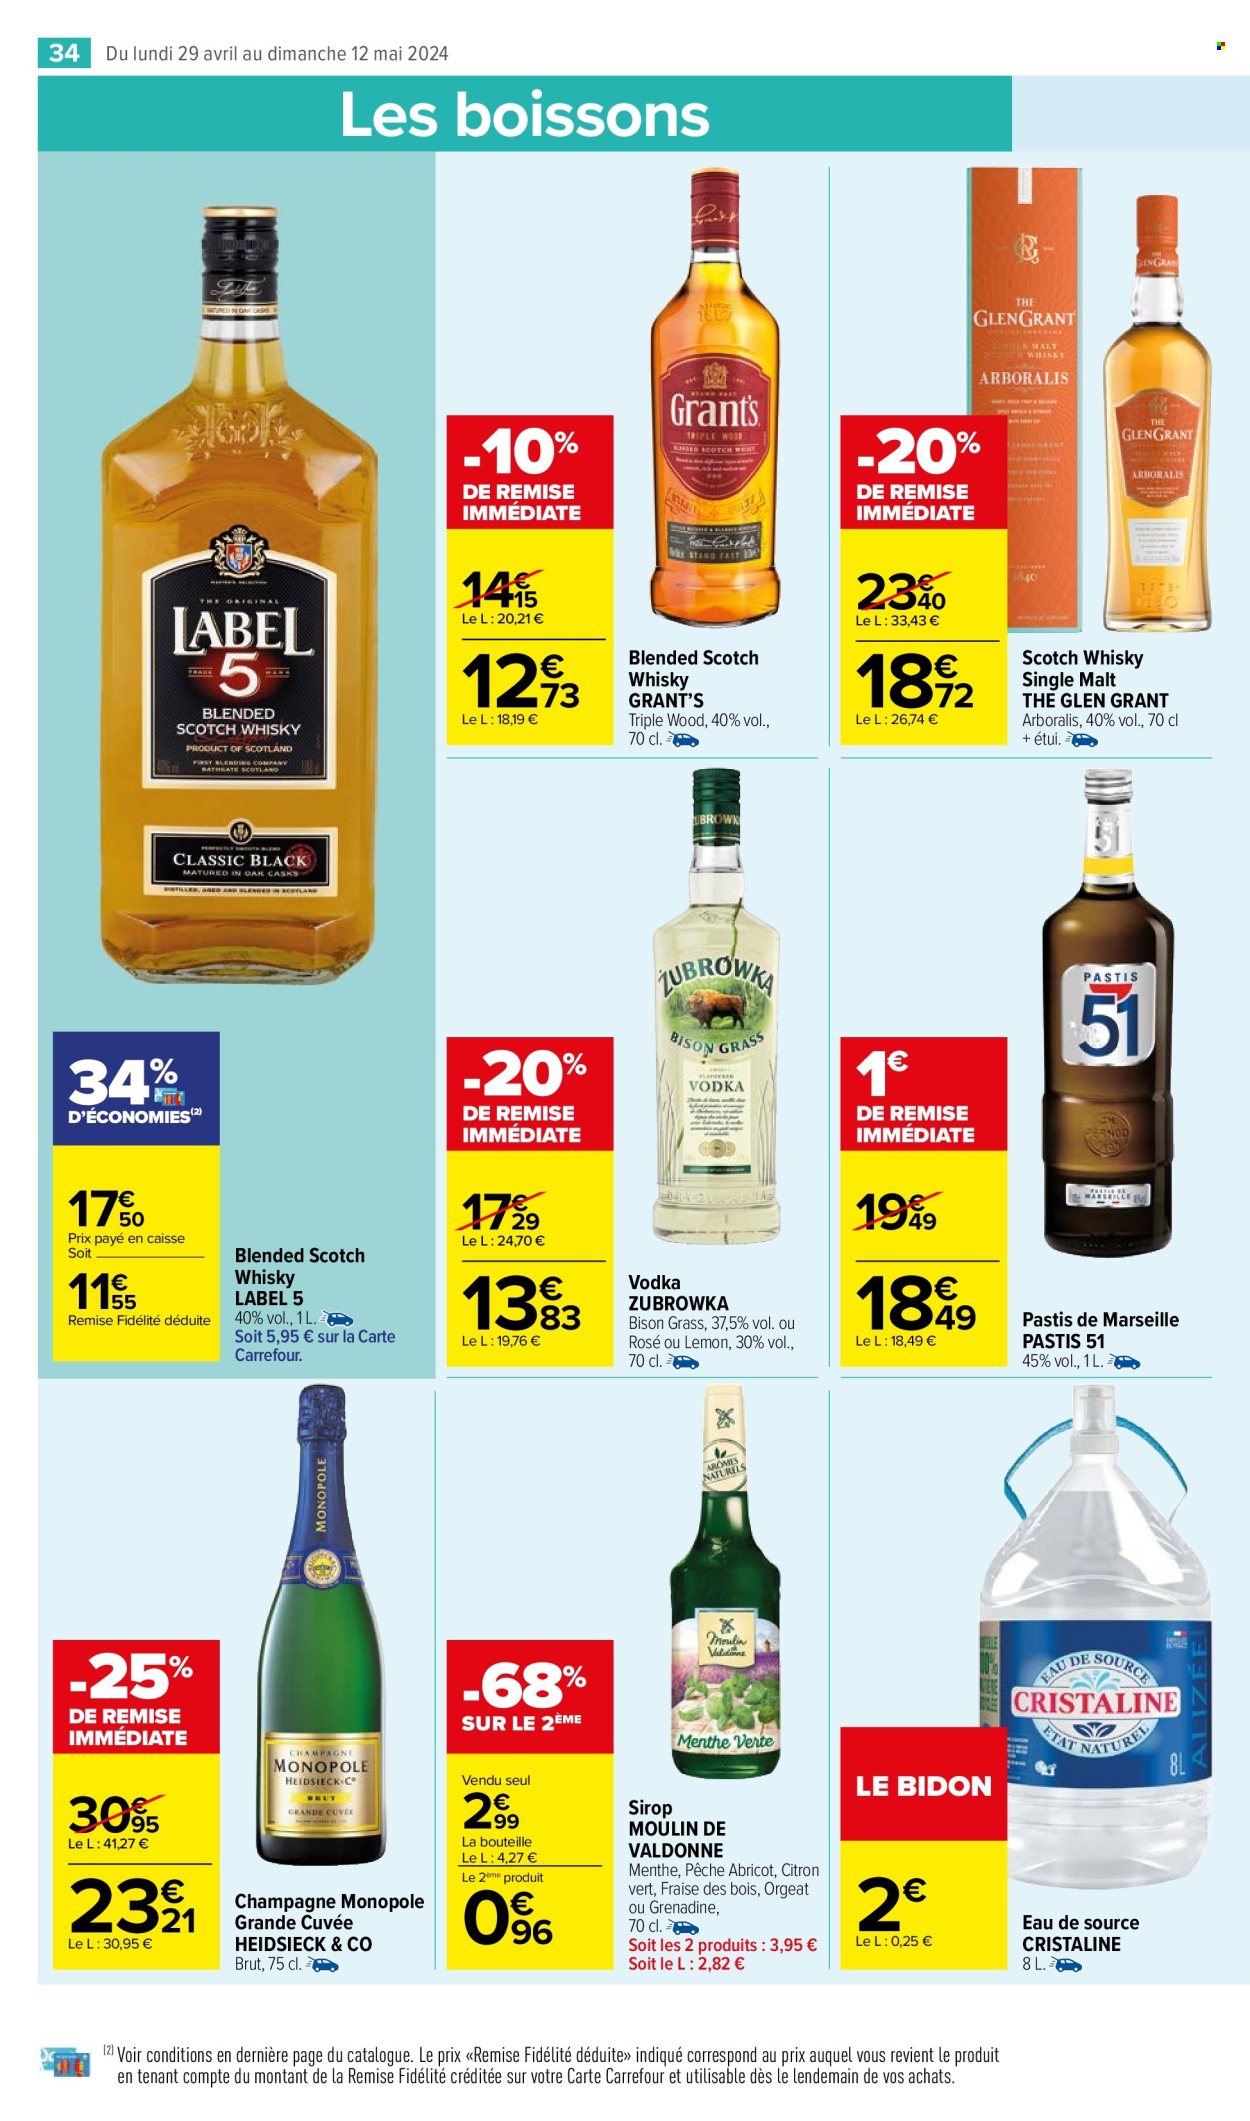 thumbnail - Catalogue Carrefour - 29/04/2024 - 12/05/2024 - Produits soldés - alcool, whisky, vodka, pastis, champagne, sirop, eau de source, Cristaline. Page 36.